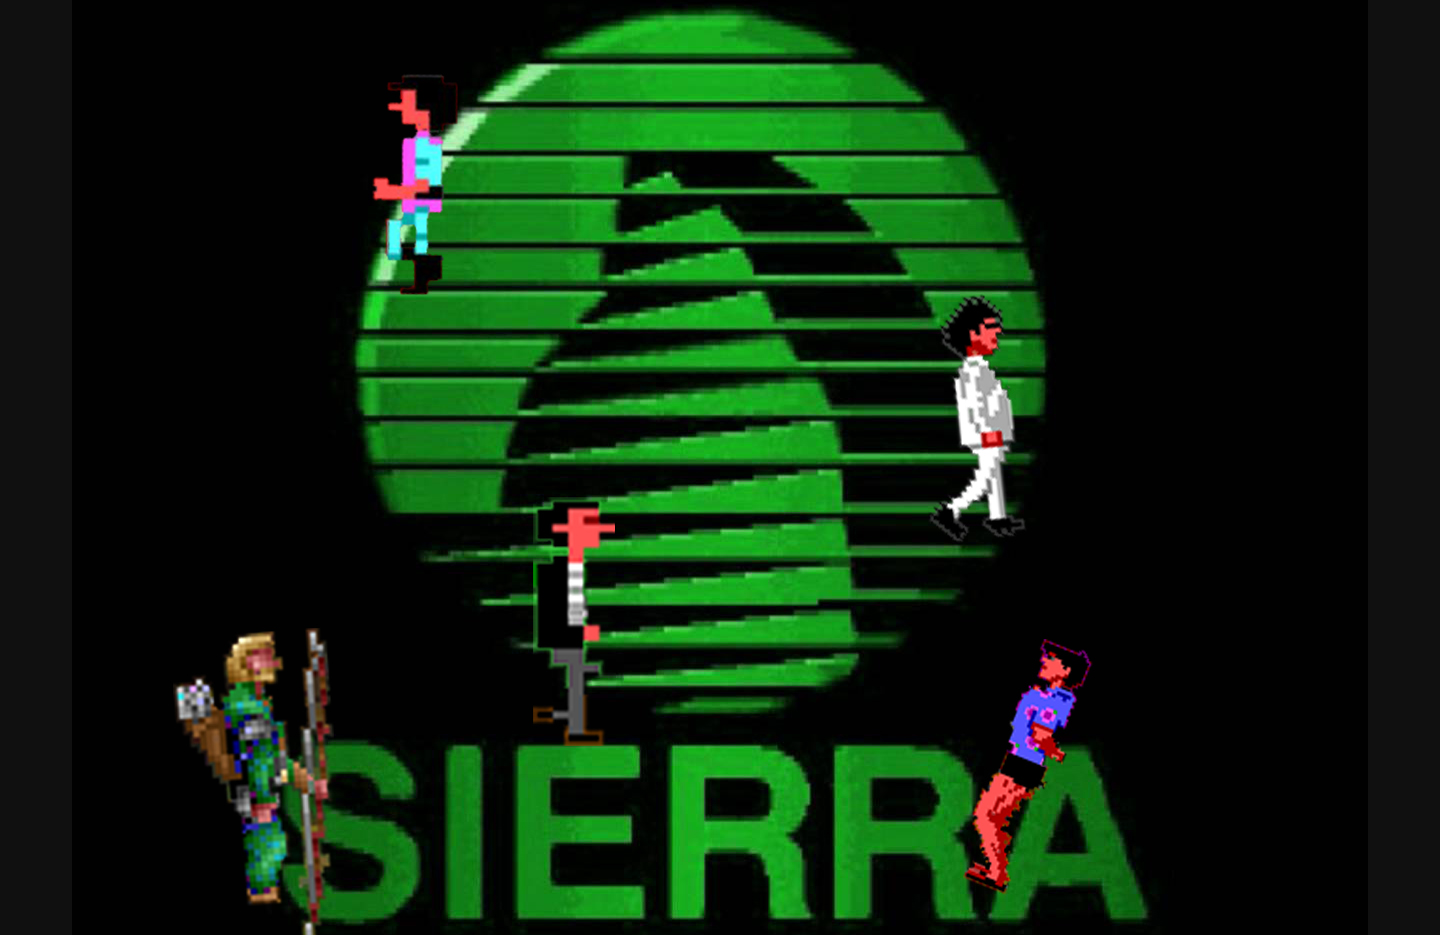 Sierra underdogs